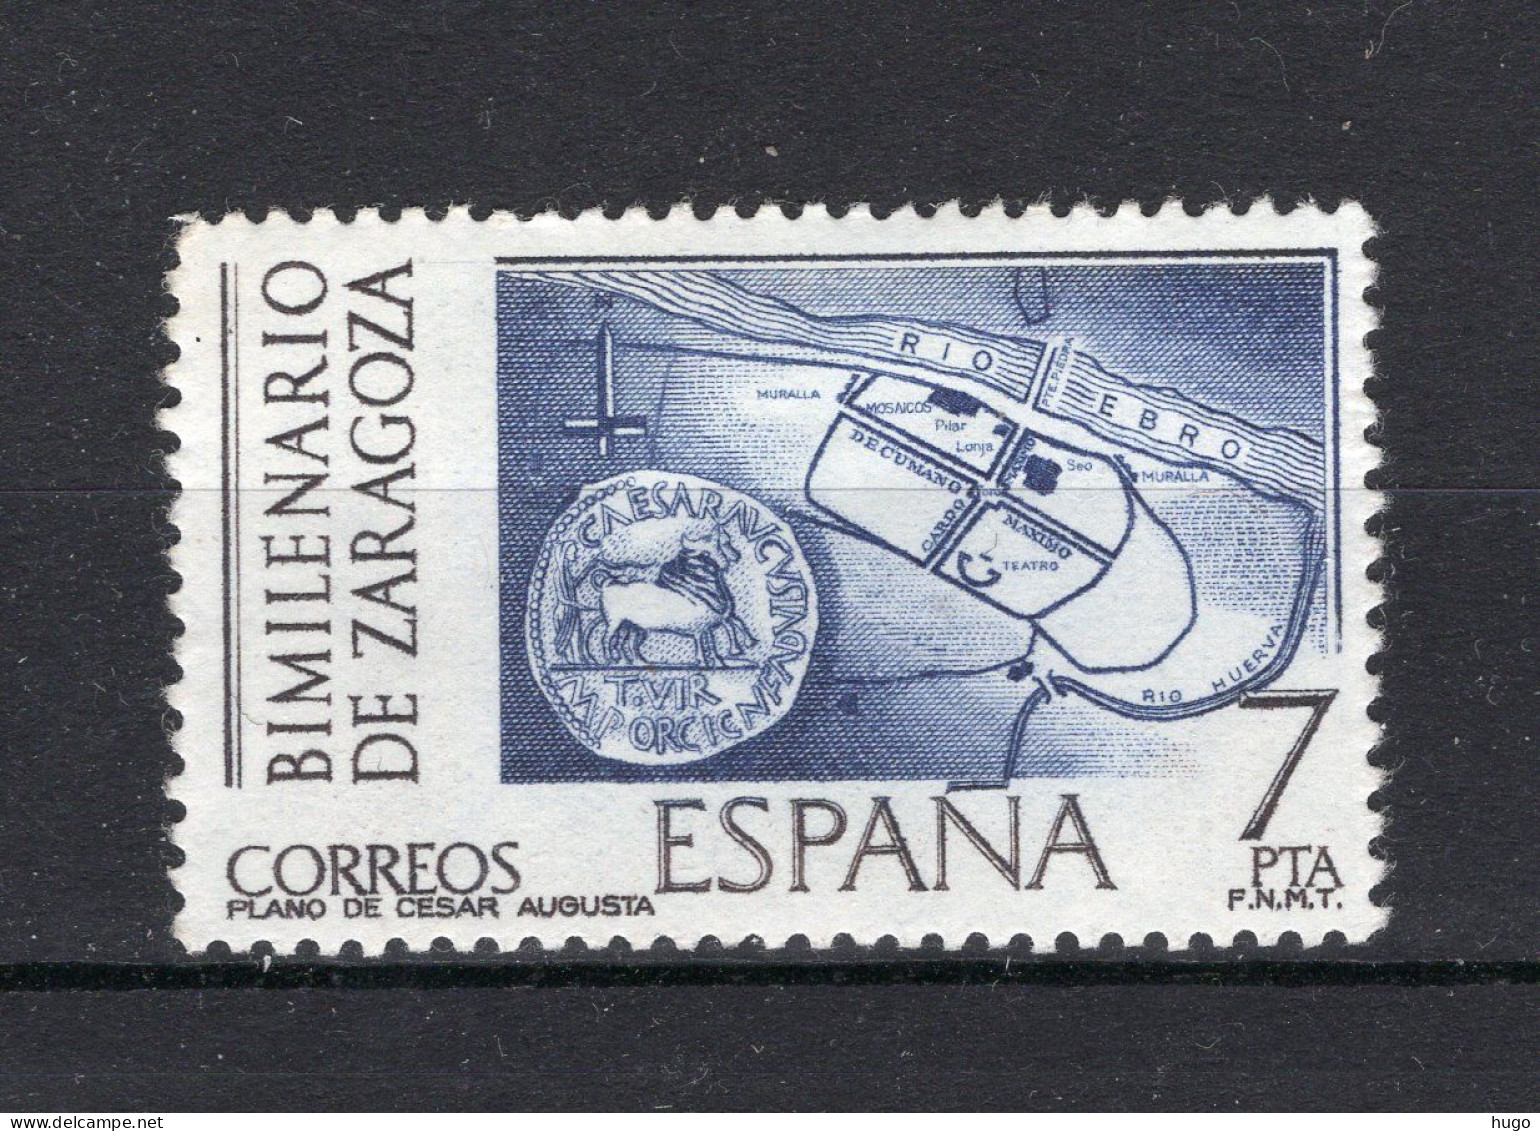 SPANJE Yt. 1966 MNH 1976 - Neufs